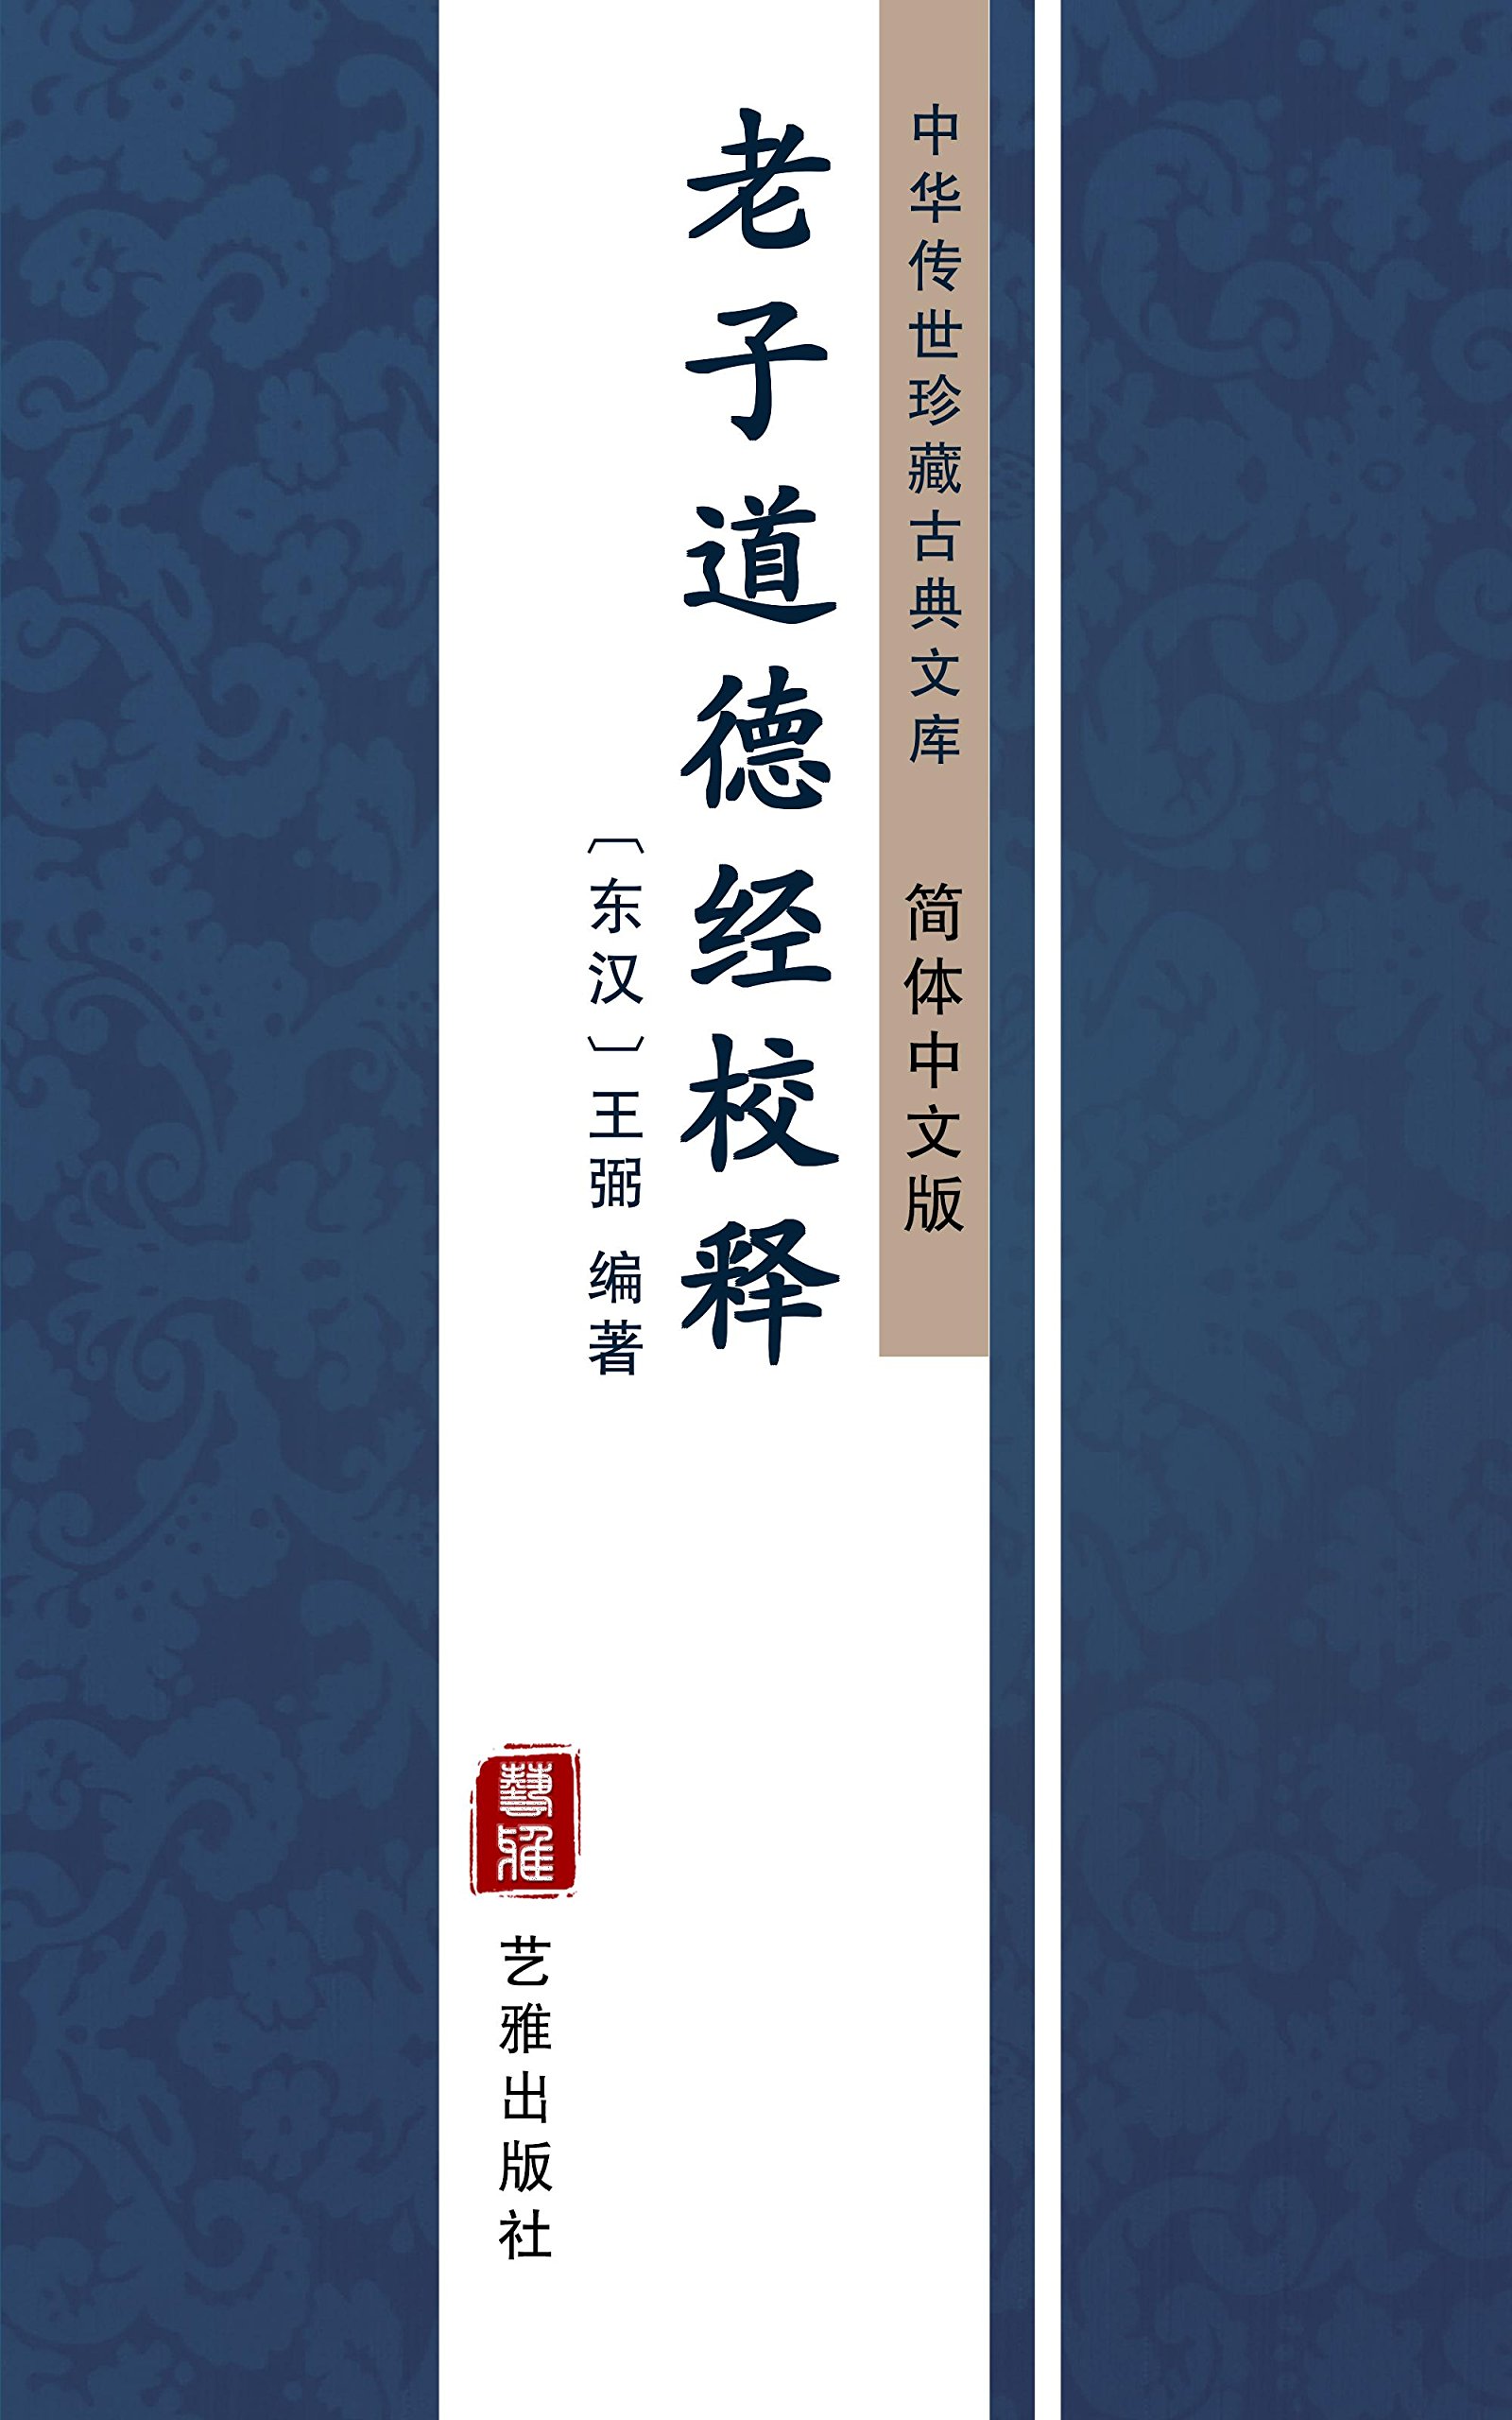 老子道德经校释（简体中文版）: 中华传世珍藏古典文库 (Chinese Edition)